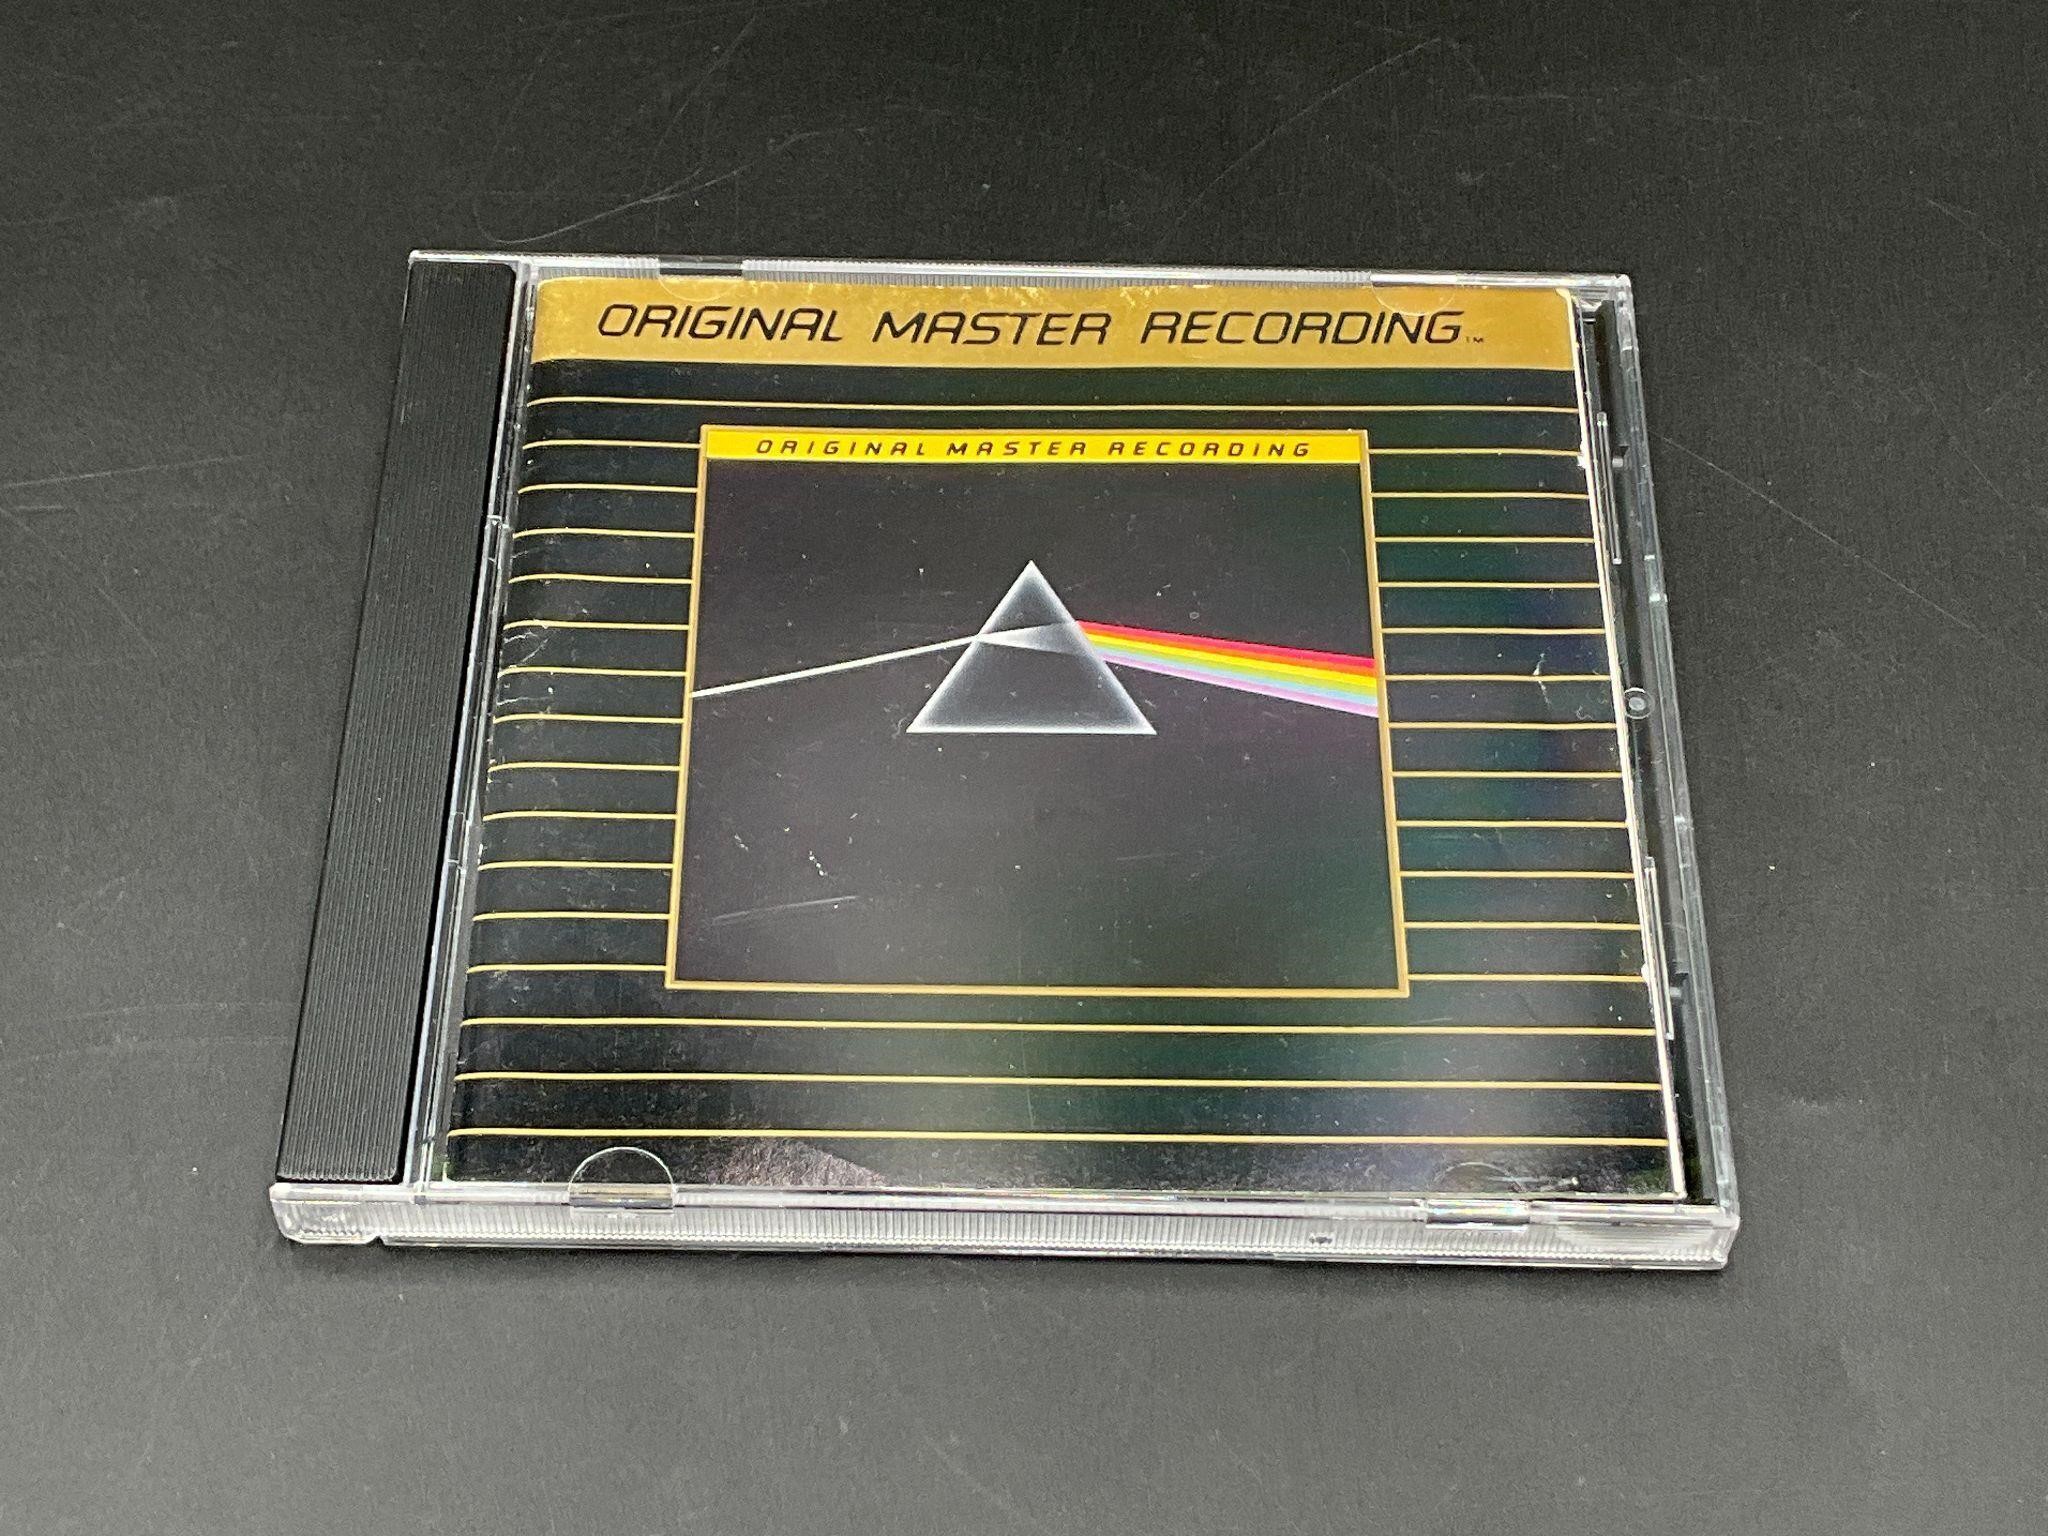 1988 Pink Floyd "Dark Side Of The Moon" OMR CD